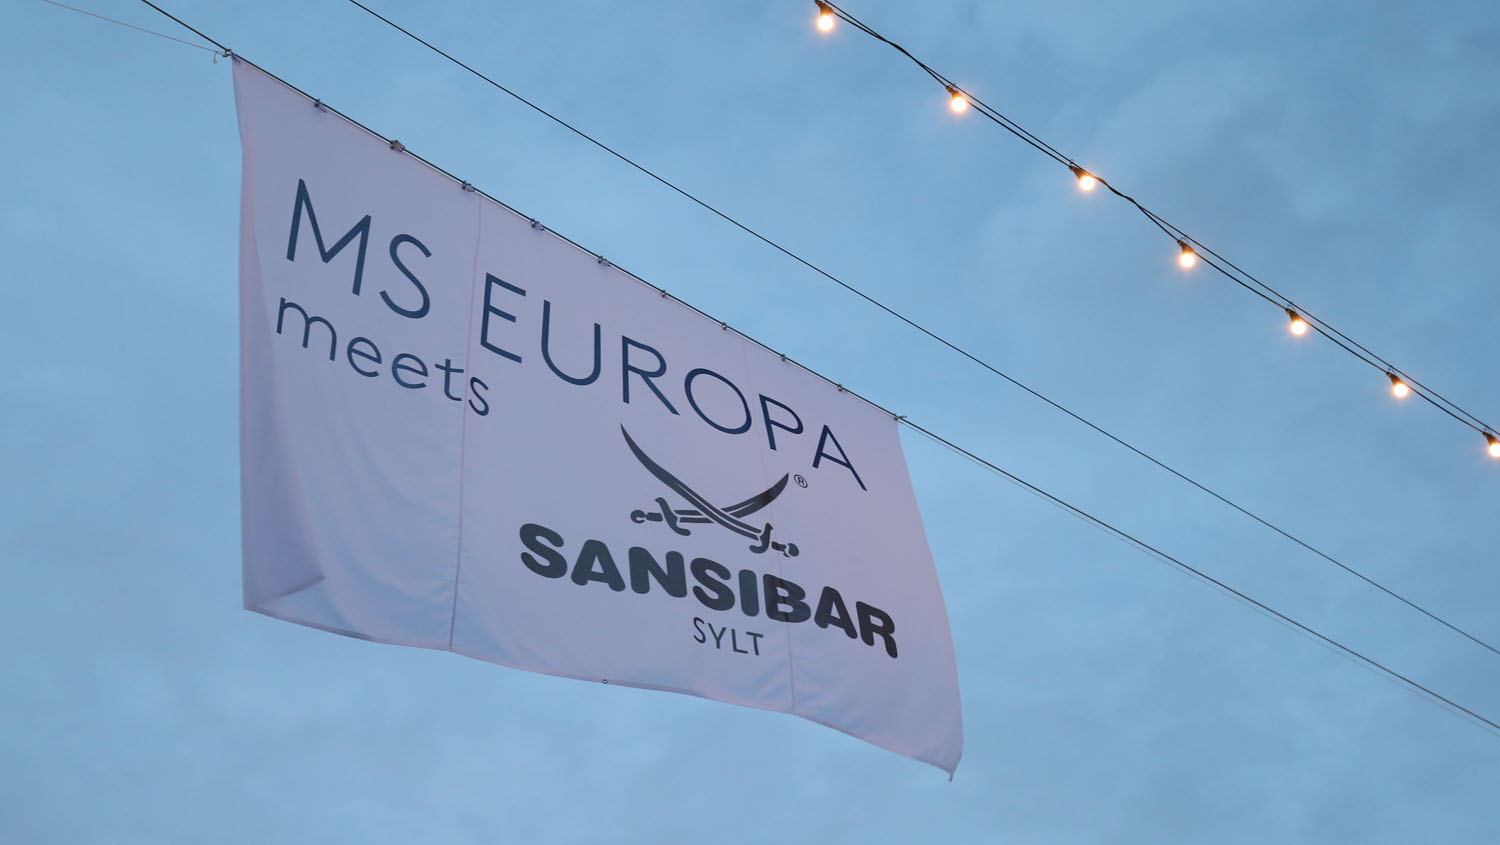 Impressionen der MS Europa Meets Sansibar 2017